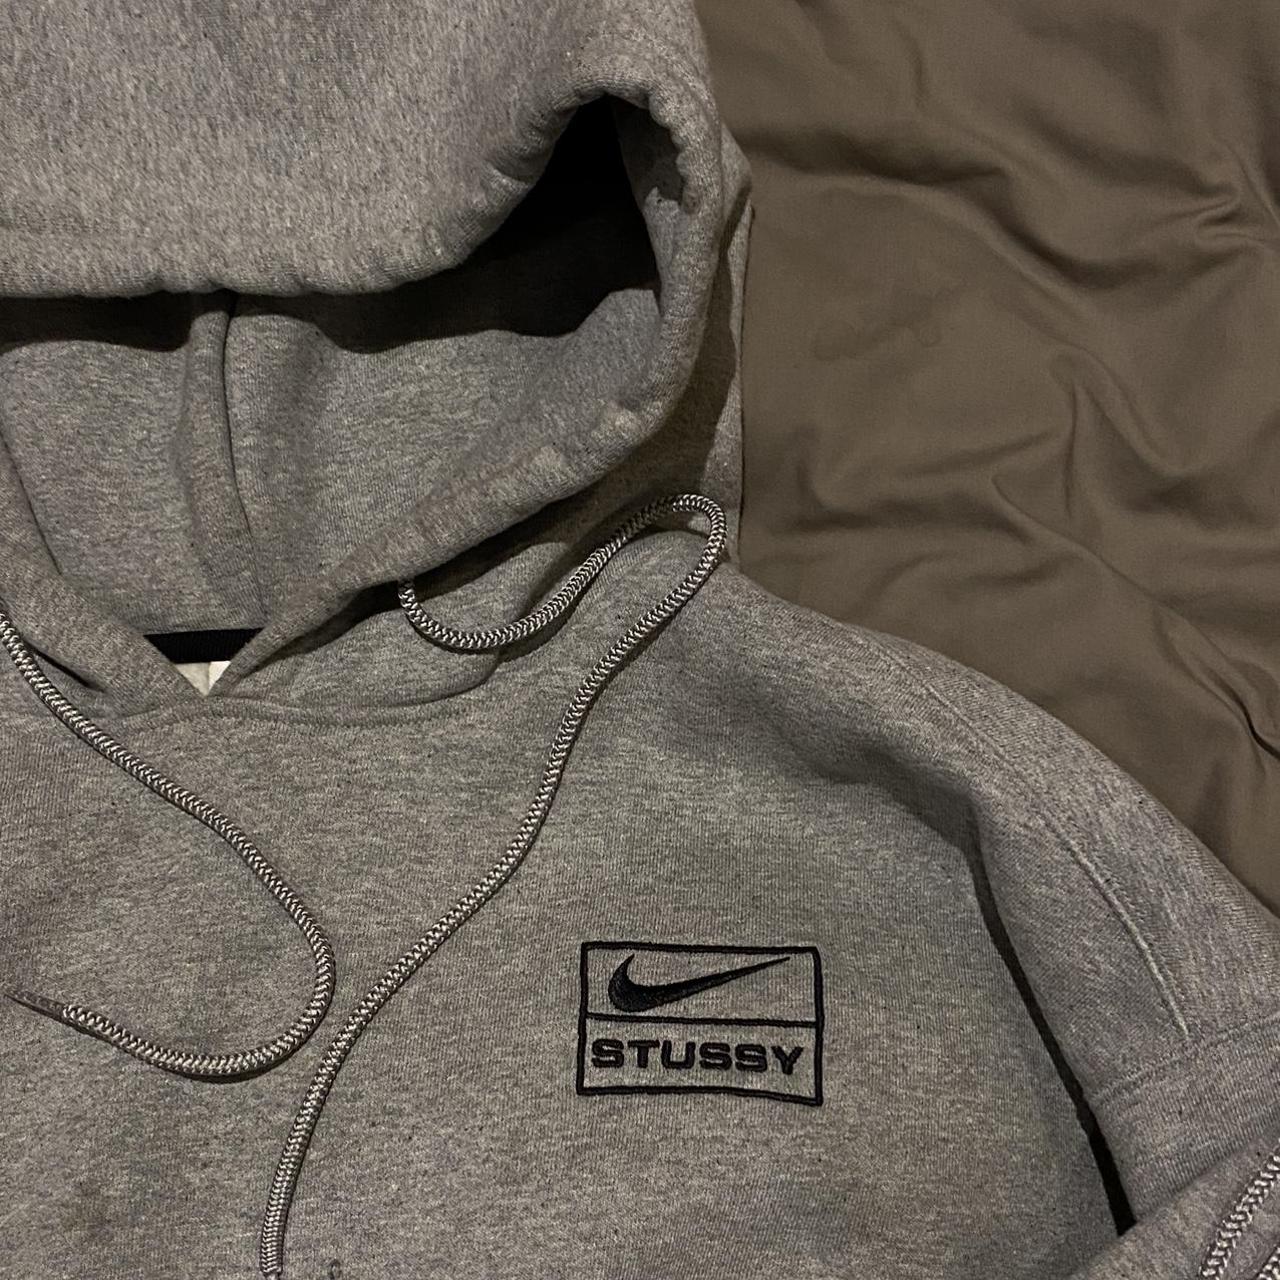 Nike x Stussy heather grey tracksuit - hoodie... - Depop